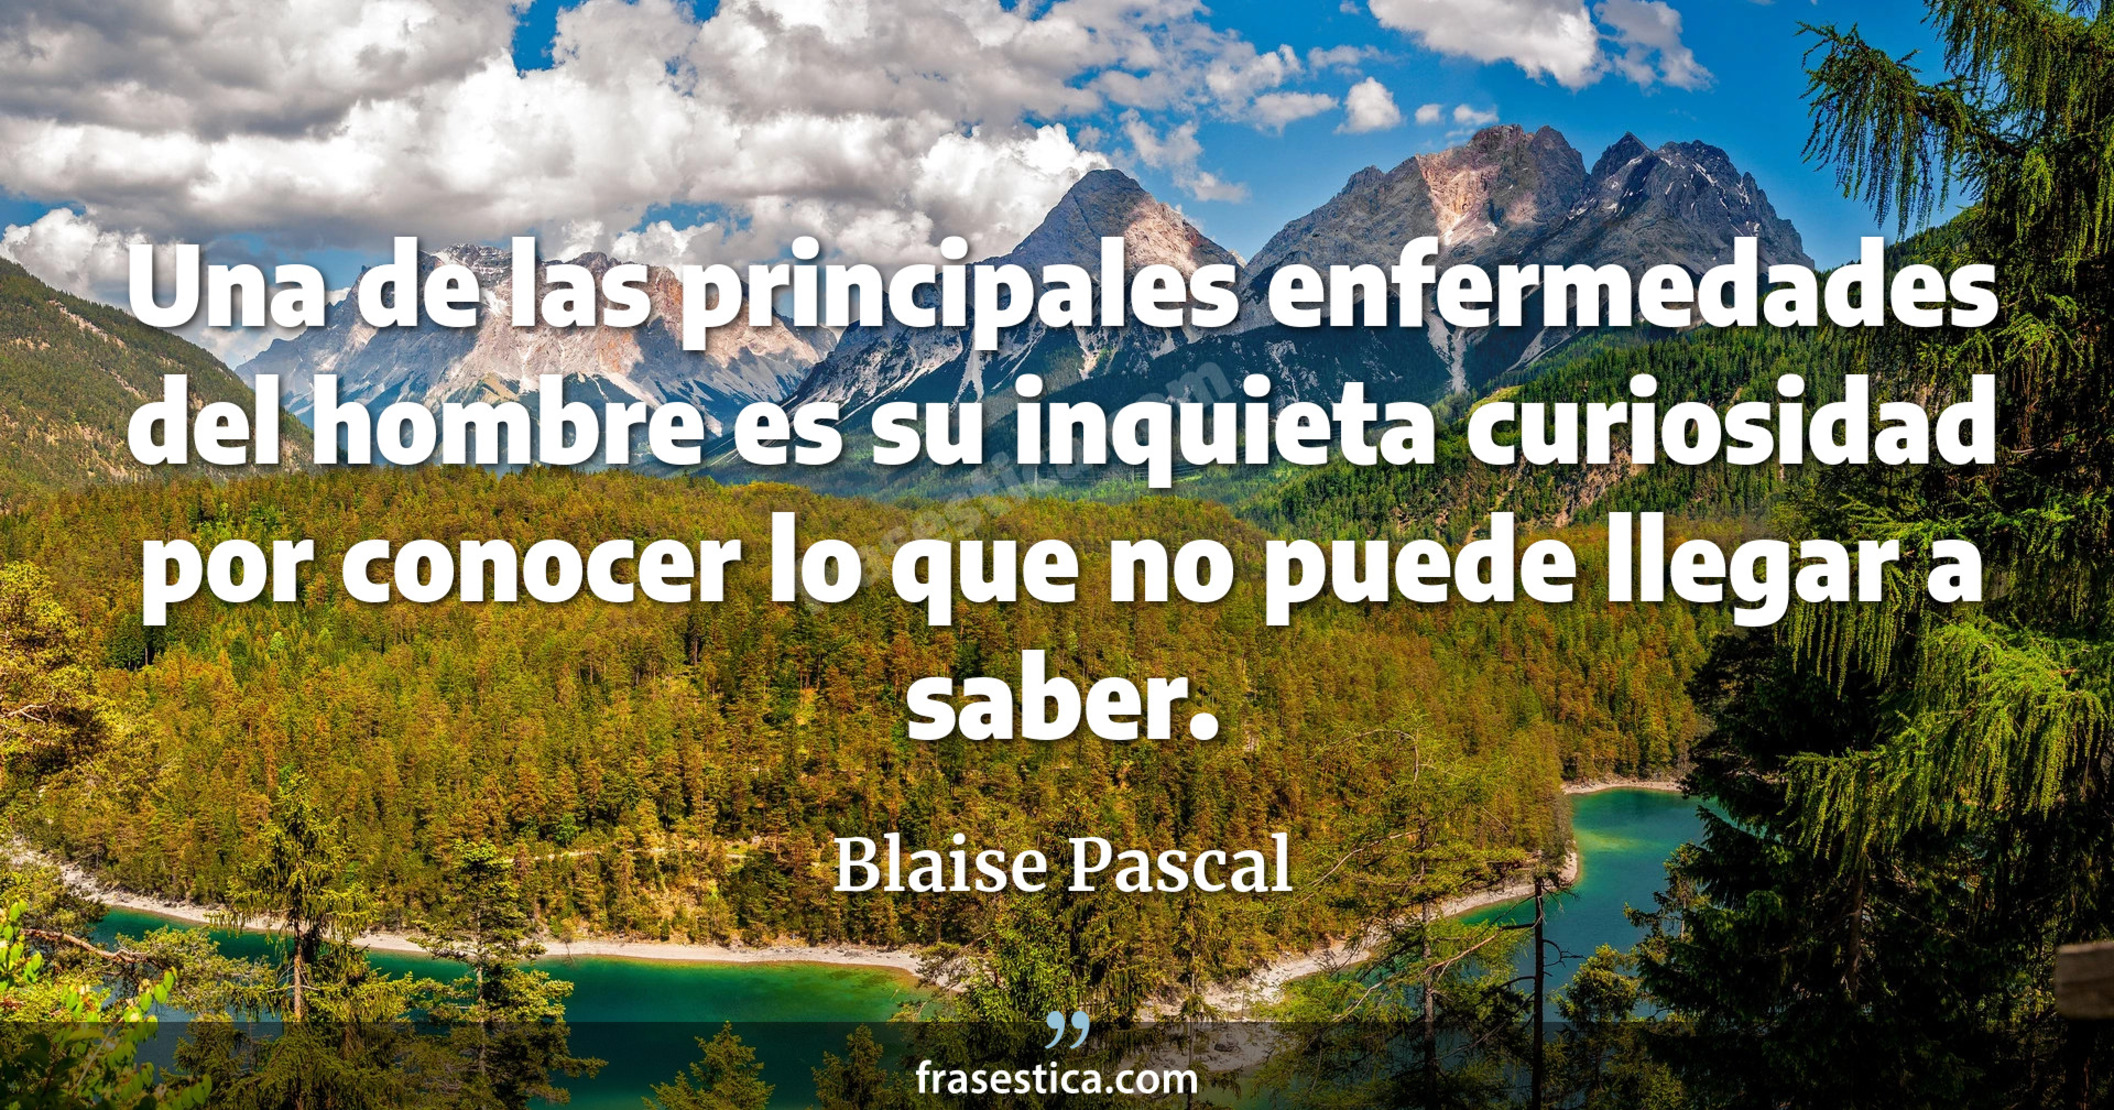 Una de las principales enfermedades del hombre es su inquieta curiosidad por conocer lo que no puede llegar a saber. - Blaise Pascal